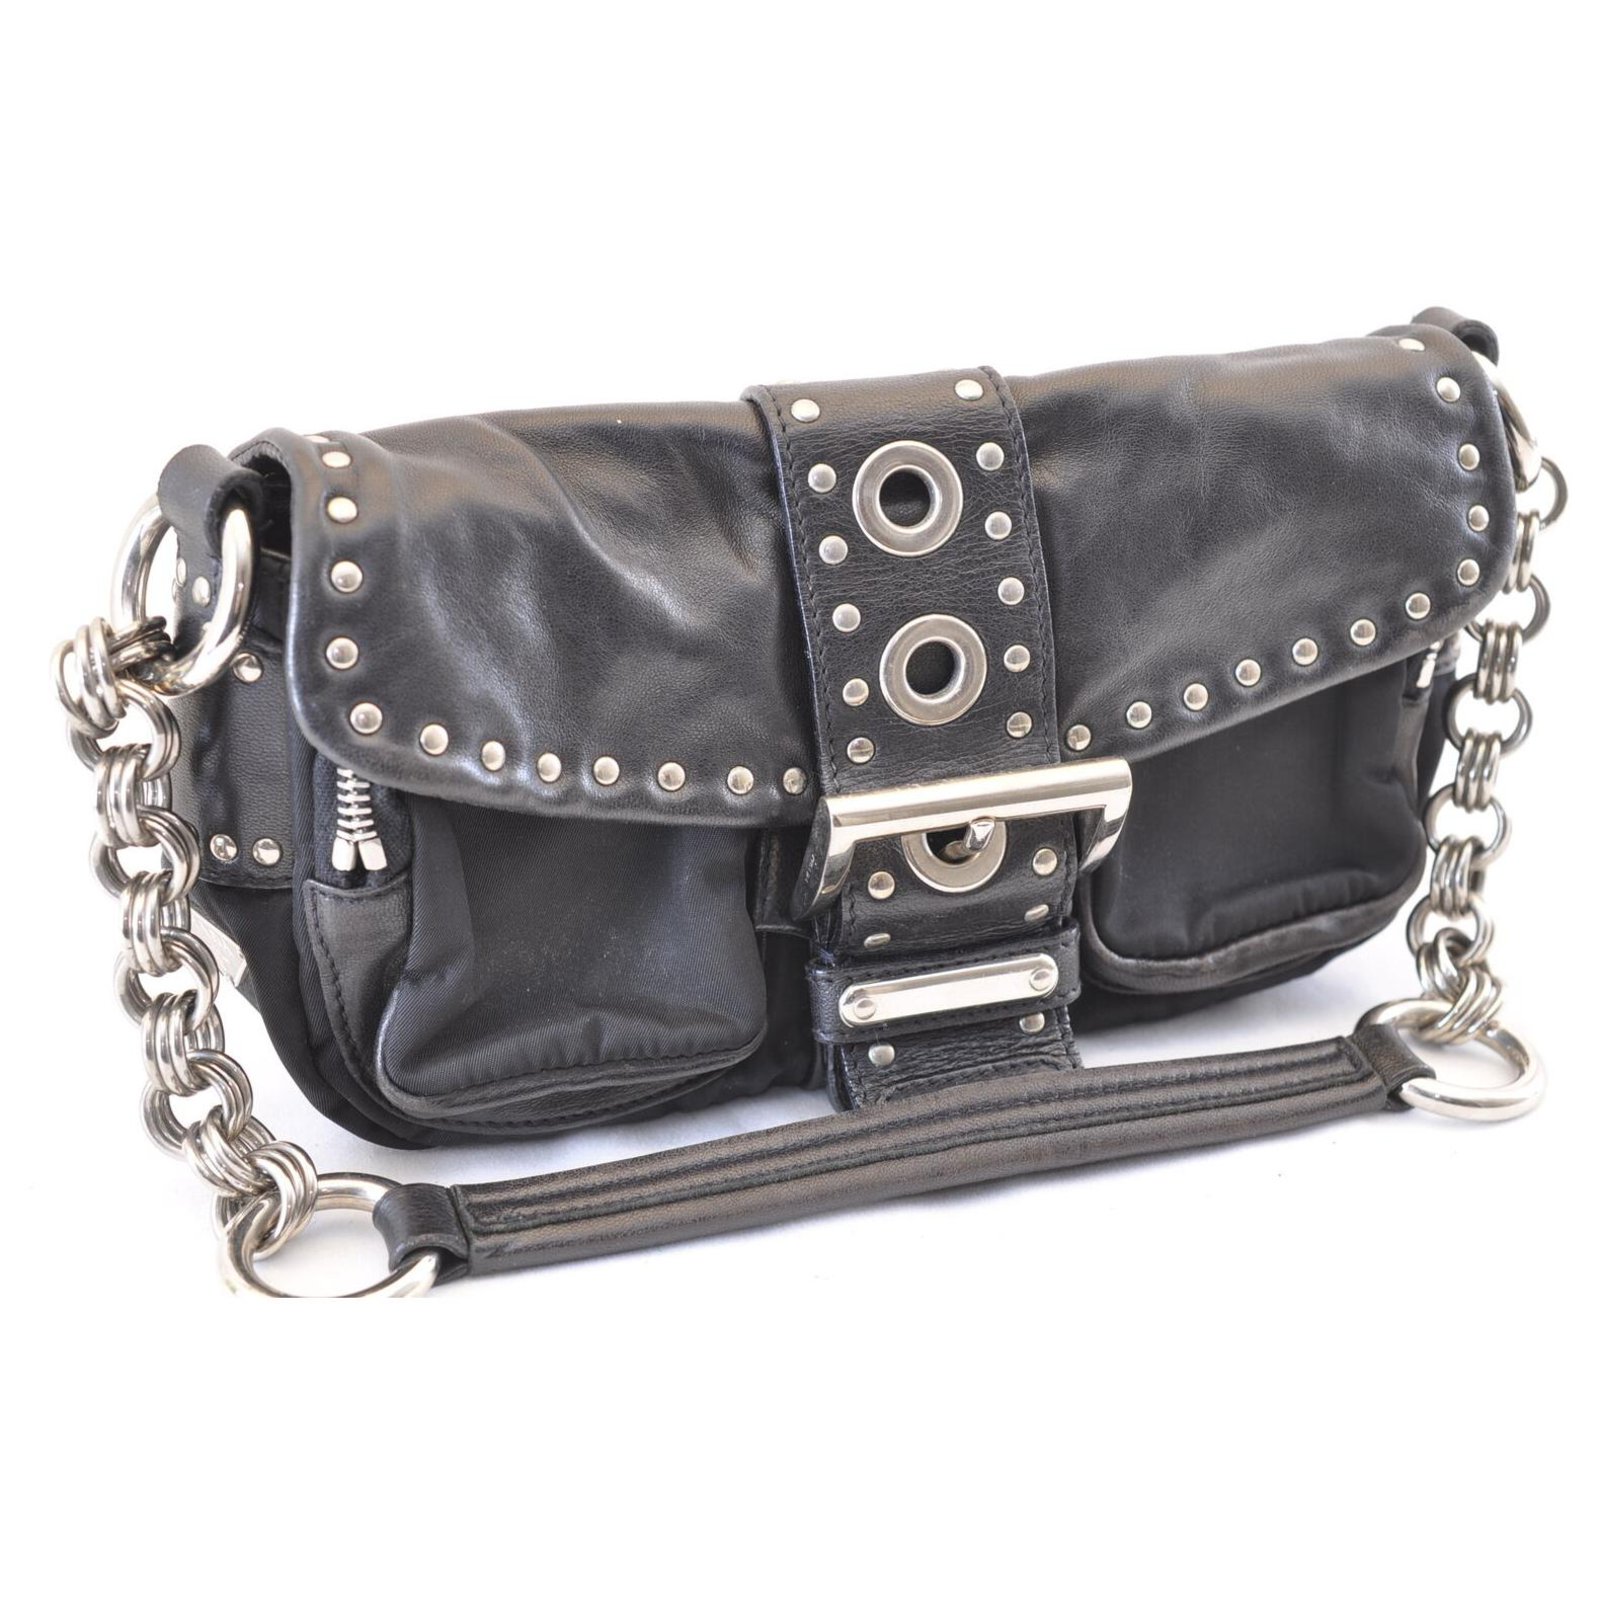 Prada Vintage - Studded Nylon Shoulder Bag - Black - Leather